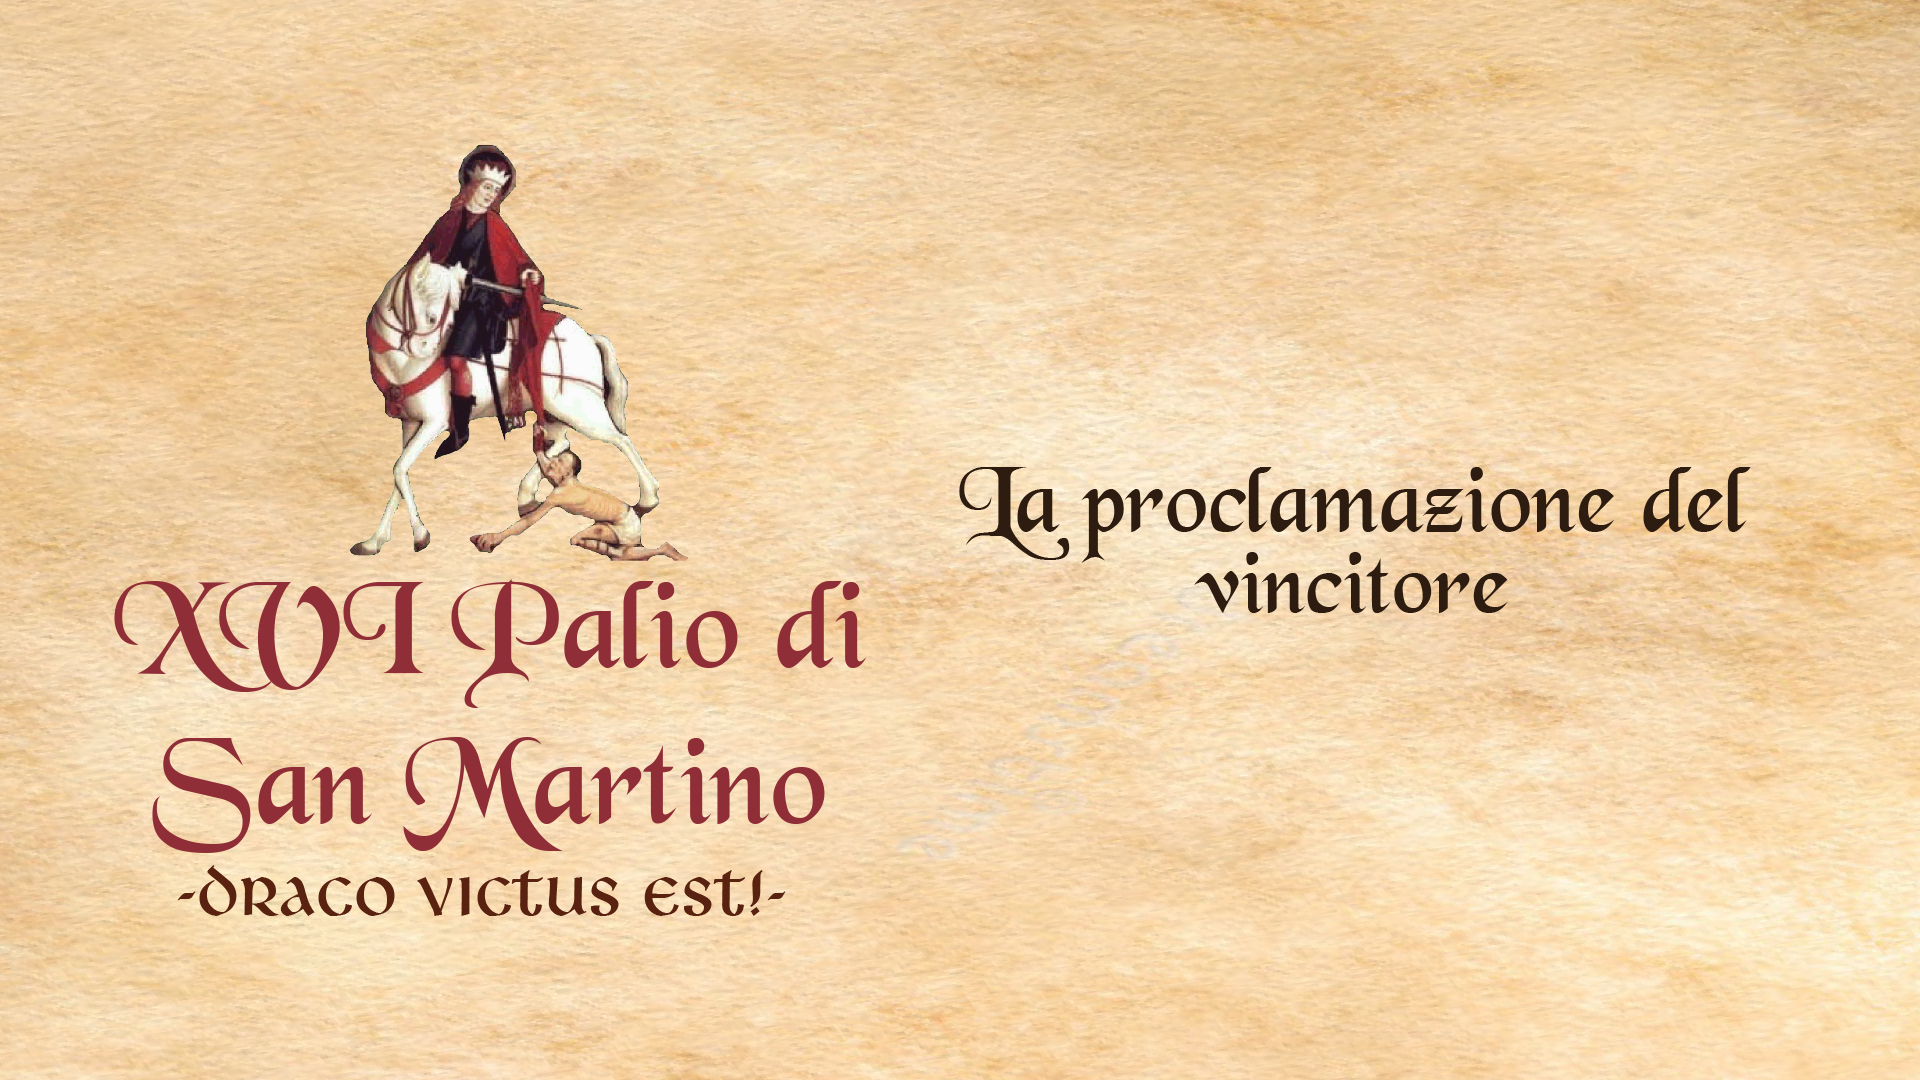 XVI Palio di San Martino - La proclamazione dei vincitori